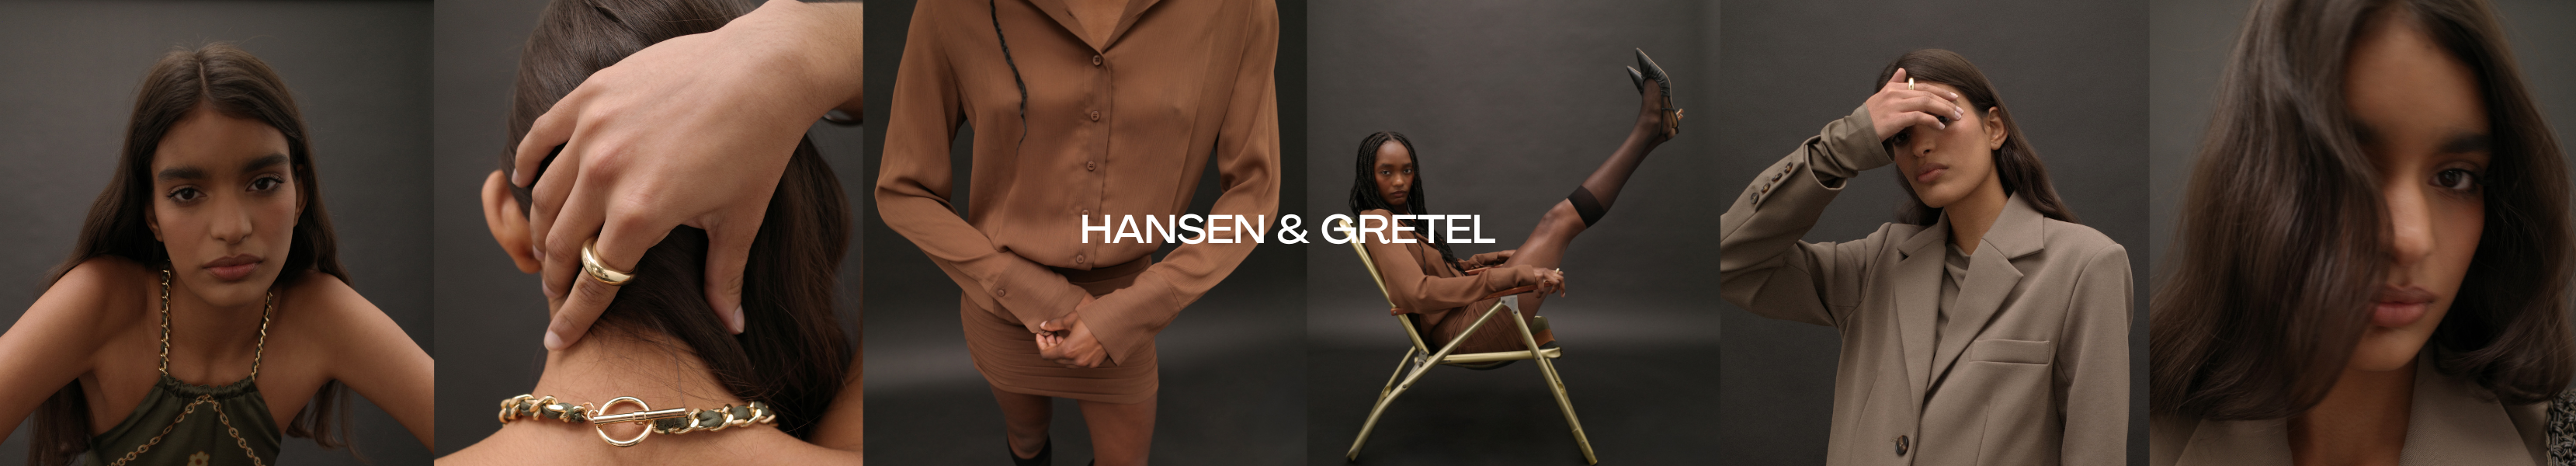 Hansen & Gretel